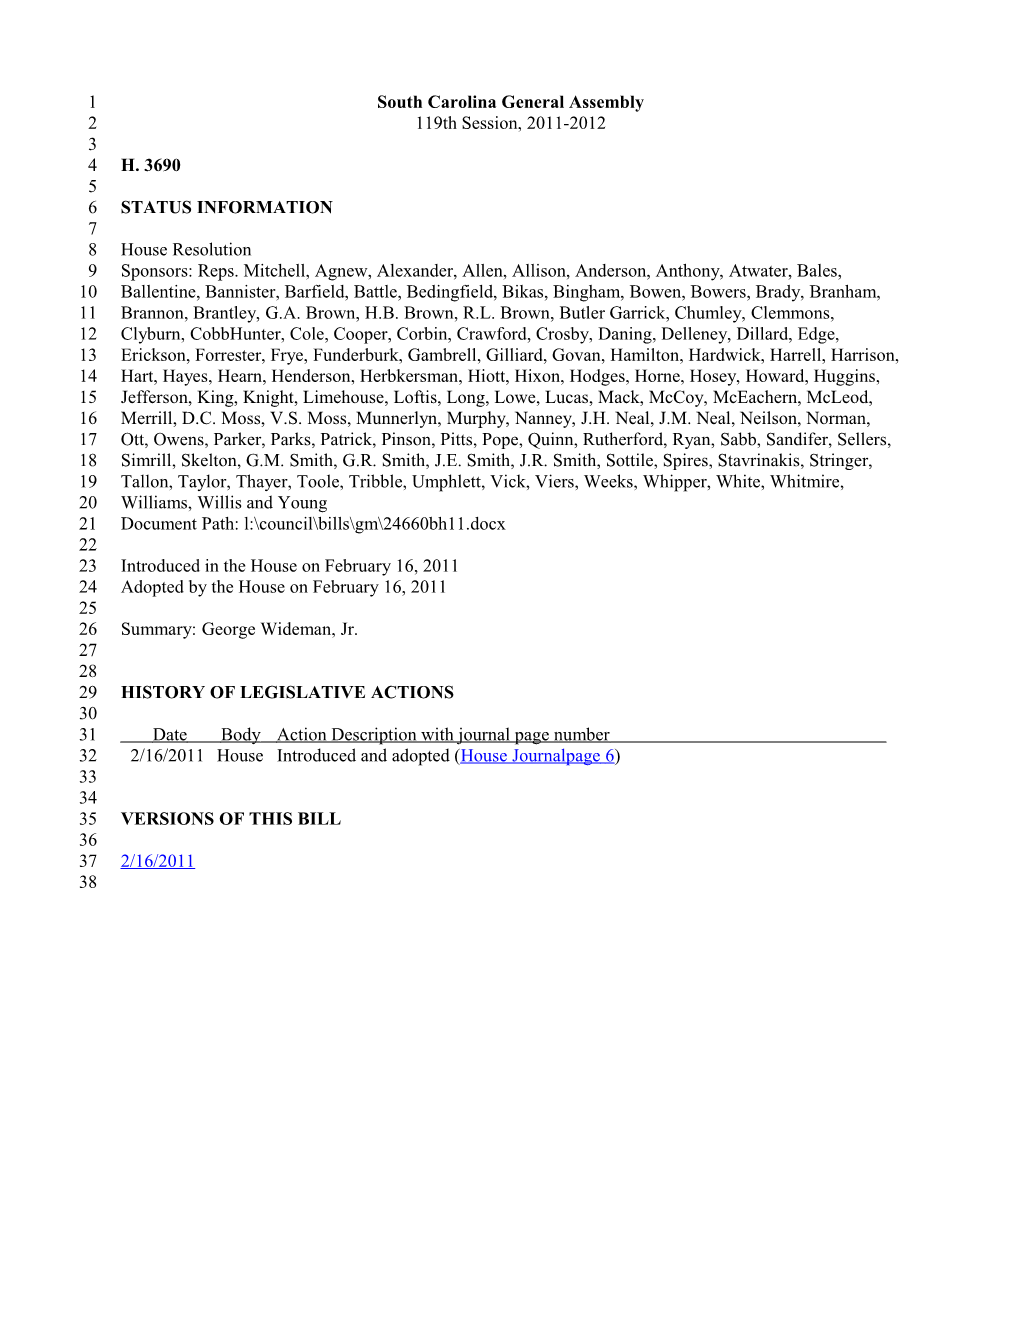 2011-2012 Bill 3690: George Wideman, Jr. - South Carolina Legislature Online